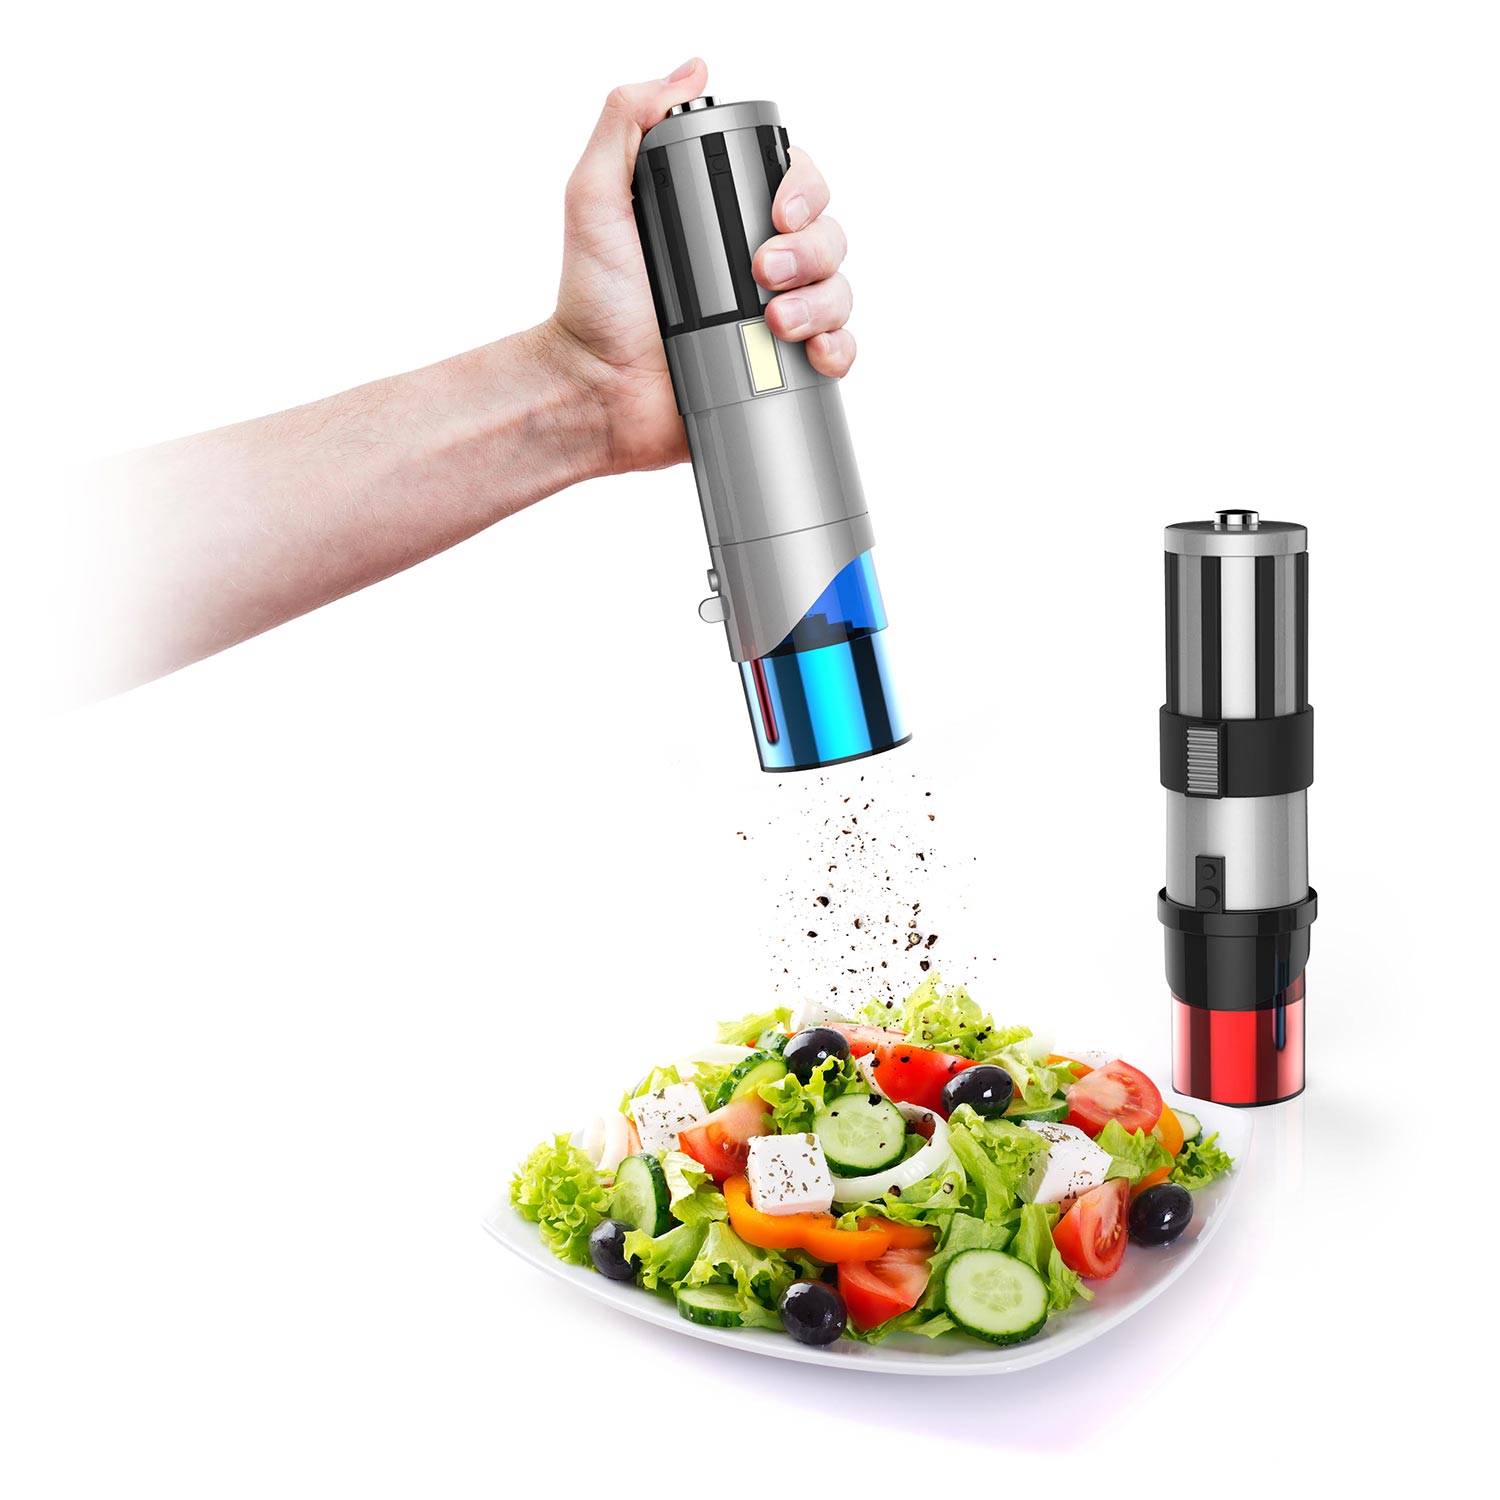 https://www.geekalerts.com/u/Lightsaber-Salt-and-Pepper-Shakers.jpg